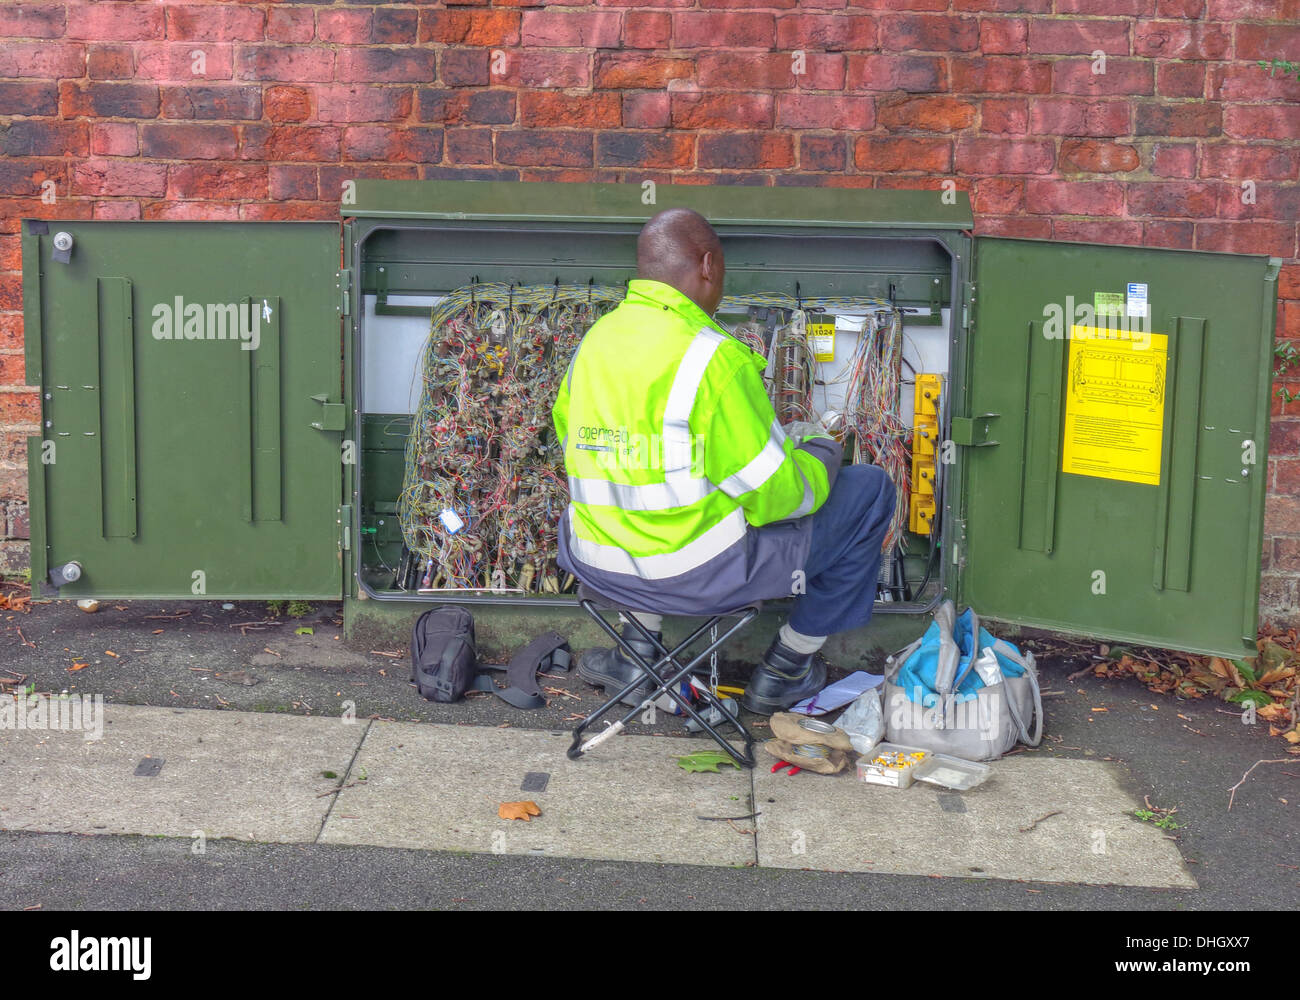 BT Openreach ingénieur télécom, réparation de défaut, dans le boîtier vert de bord de route de l'armoire, Walsall, West Midlands, Angleterre, Royaume-Uni Banque D'Images